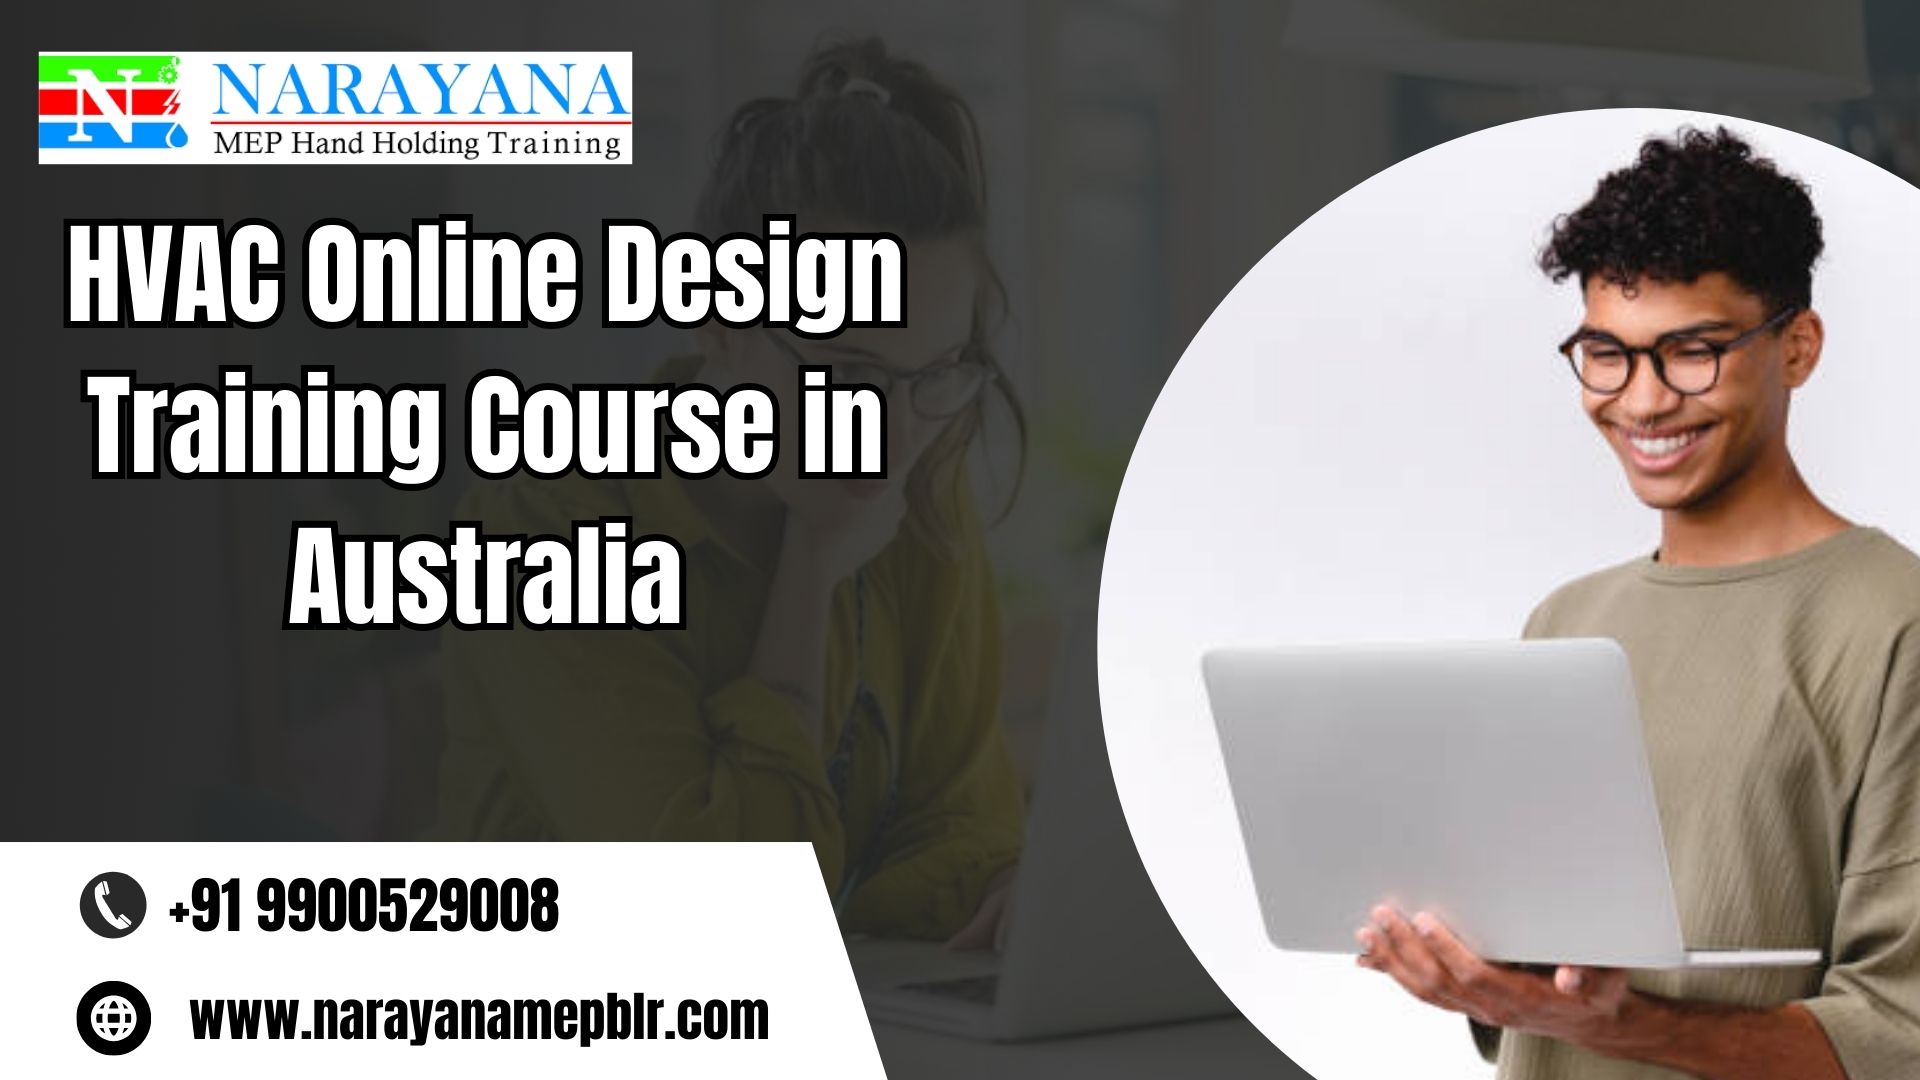 HVAC Online Design Training Course in Australia